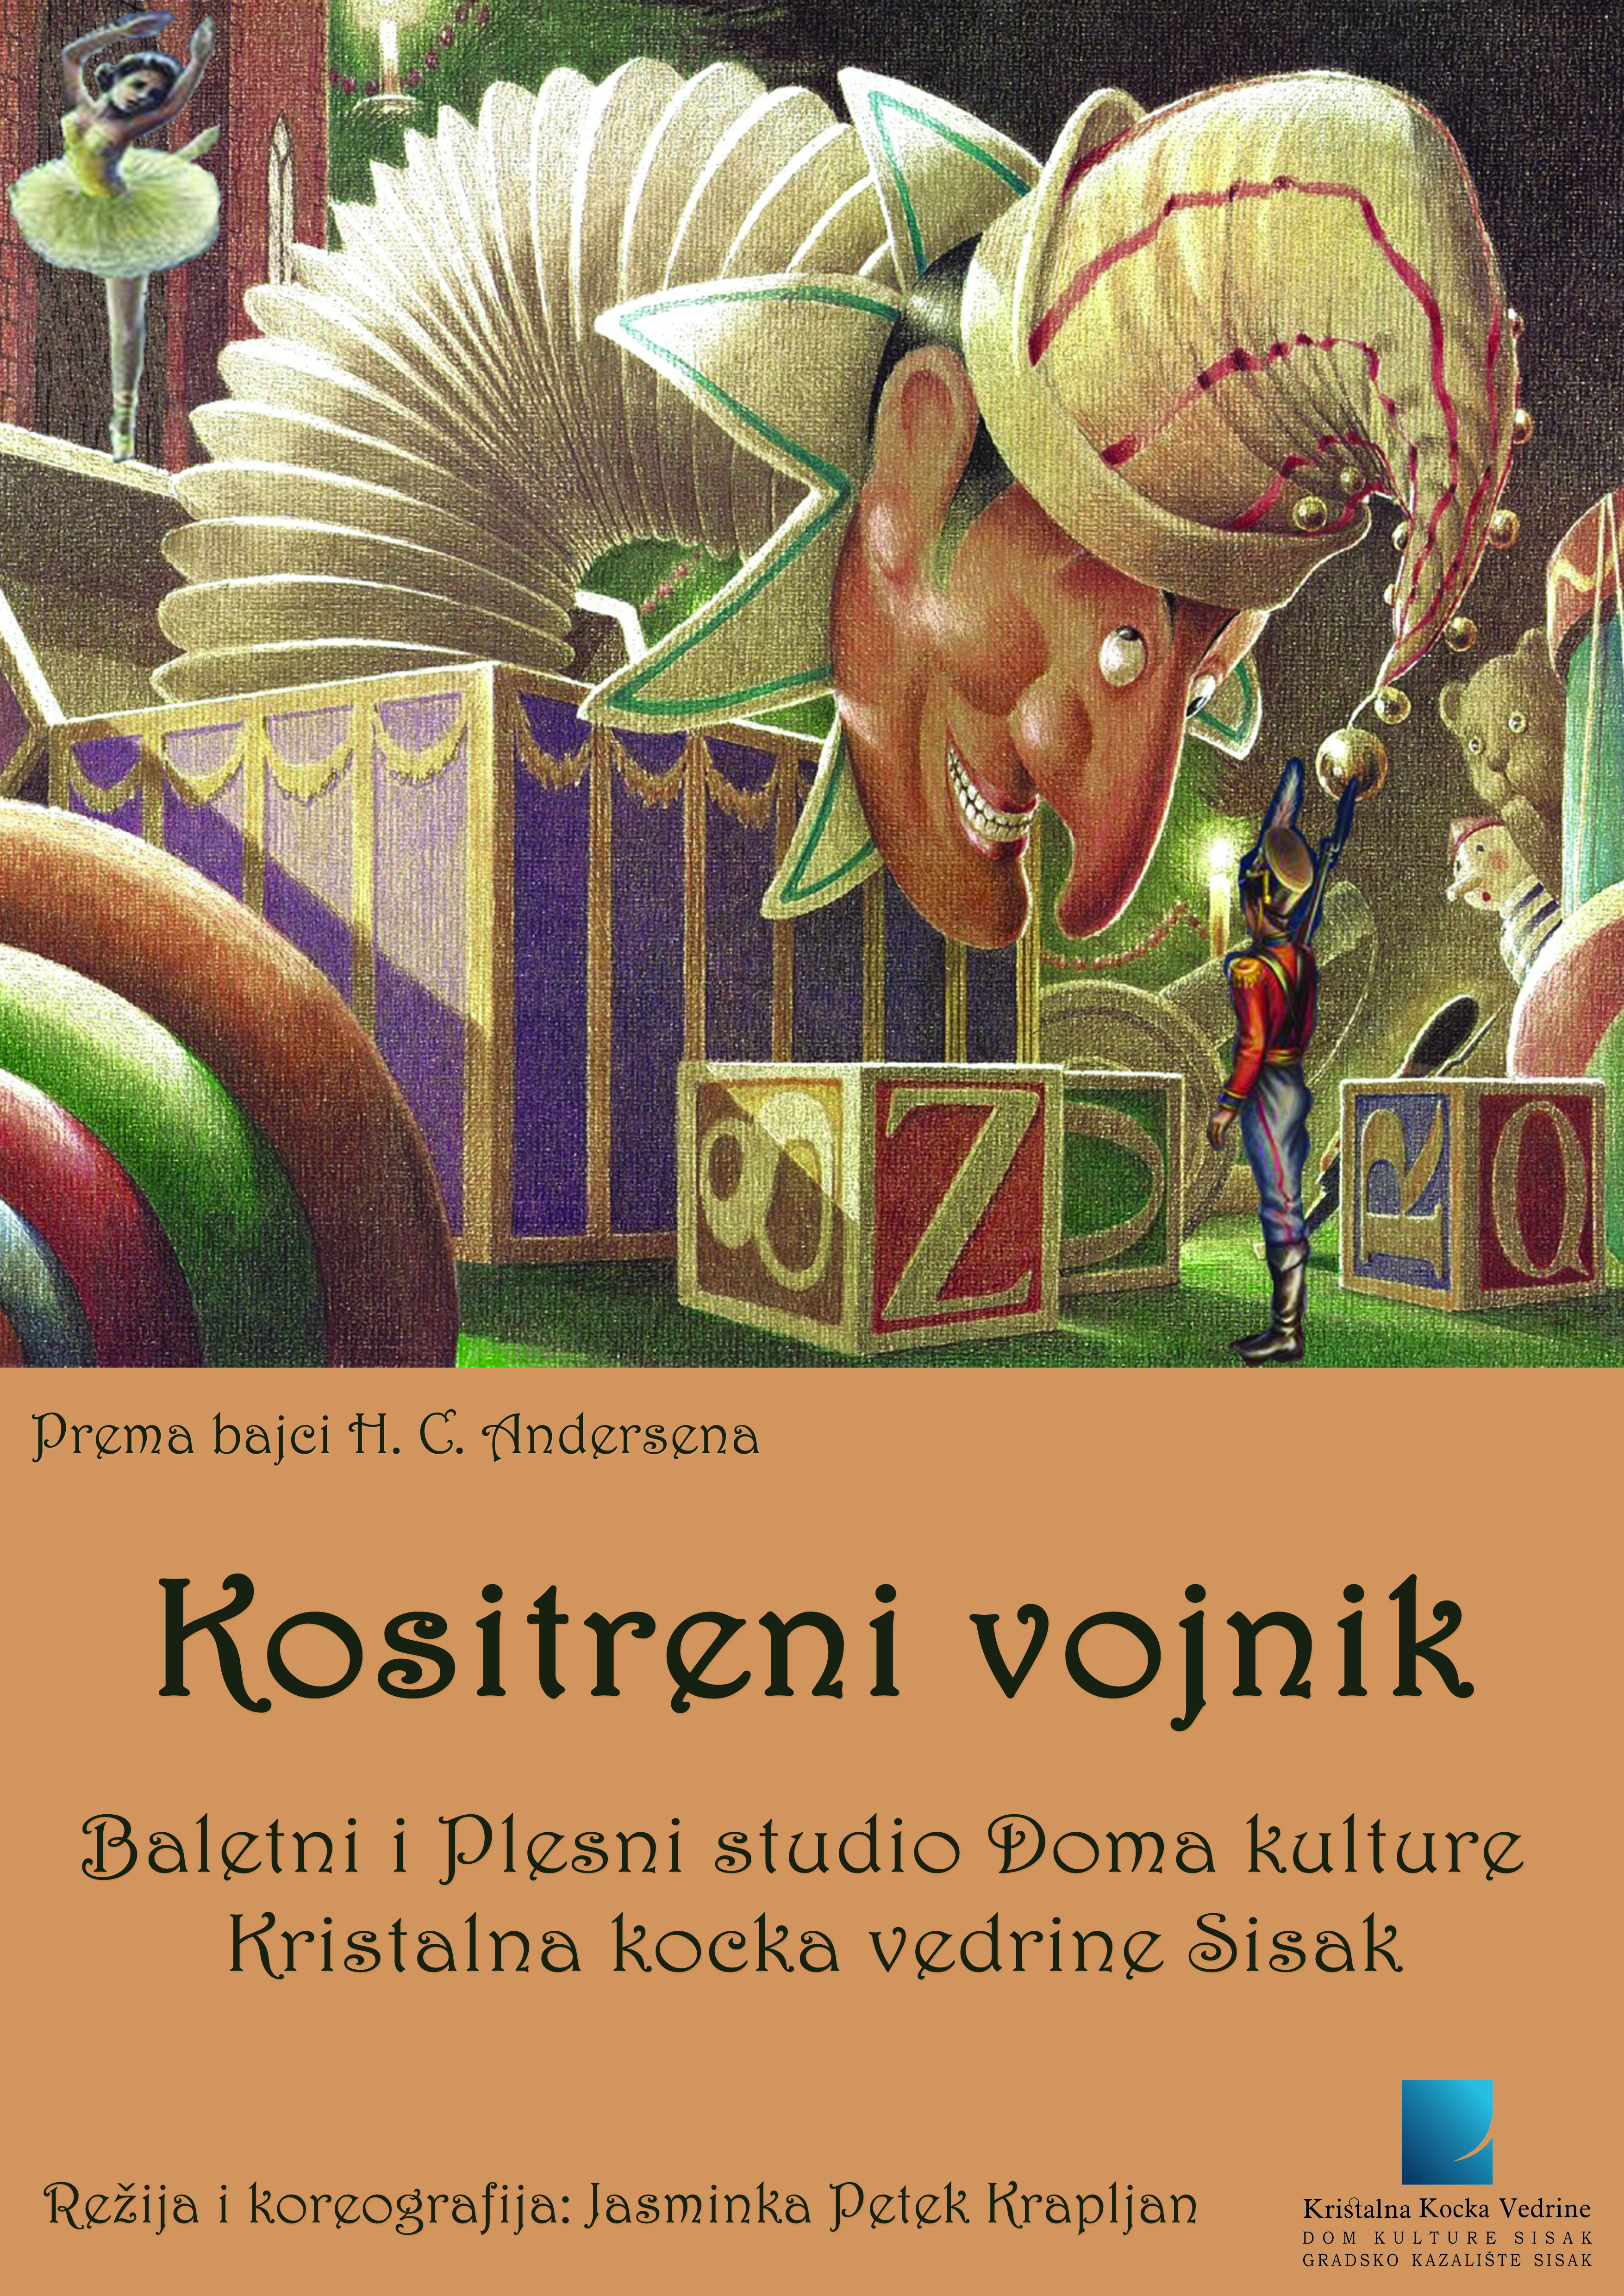 You are currently viewing Repriza plesne predstave “Kositreni vojnik”